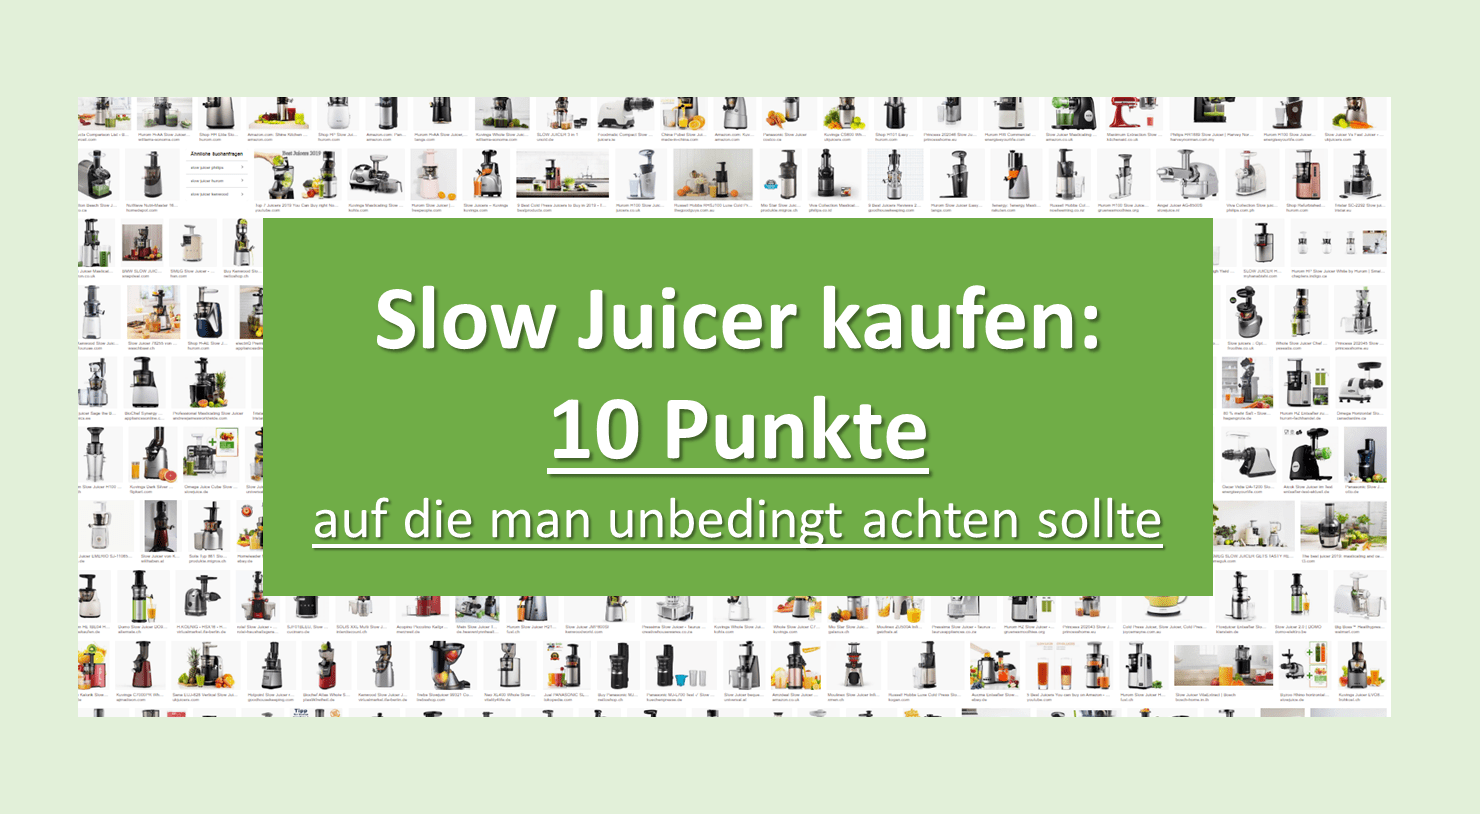 Slow Juicer kaufen: 10 Punkte auf die man unbedingt achten sollte